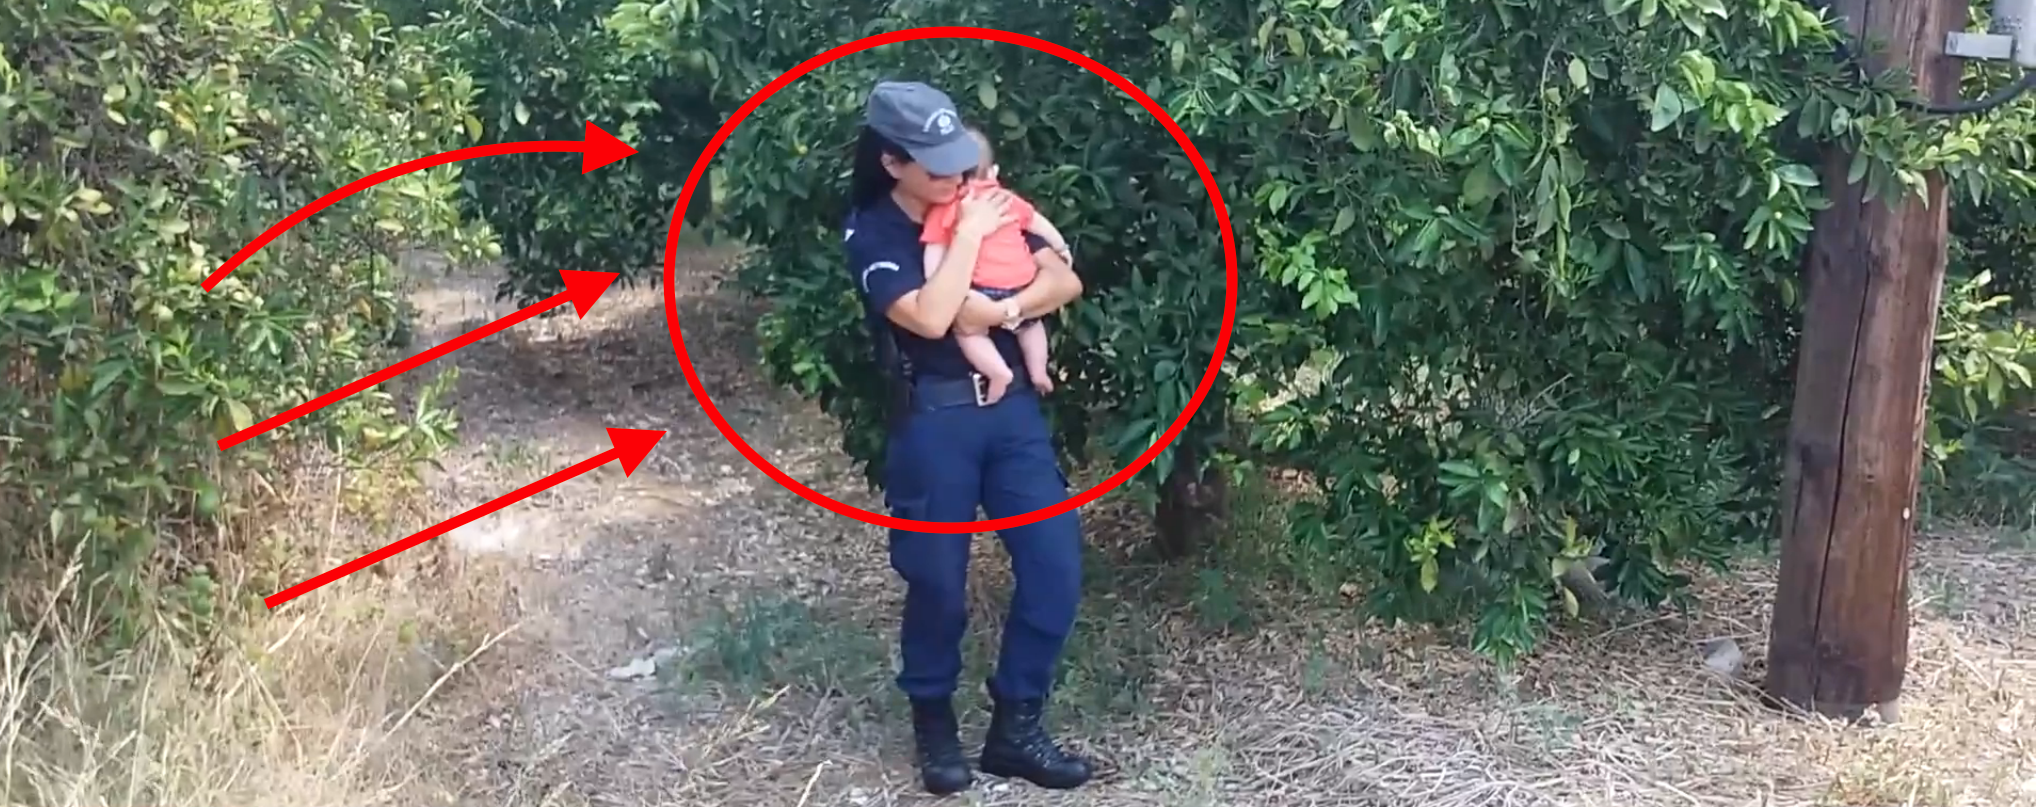 Γυναίκα αστυνομικός παρηγορεί μωράκι στην αγκαλιά της μετά από τροχαίο που κτύπησε η μητέρα του (φωτό, βίντεο)